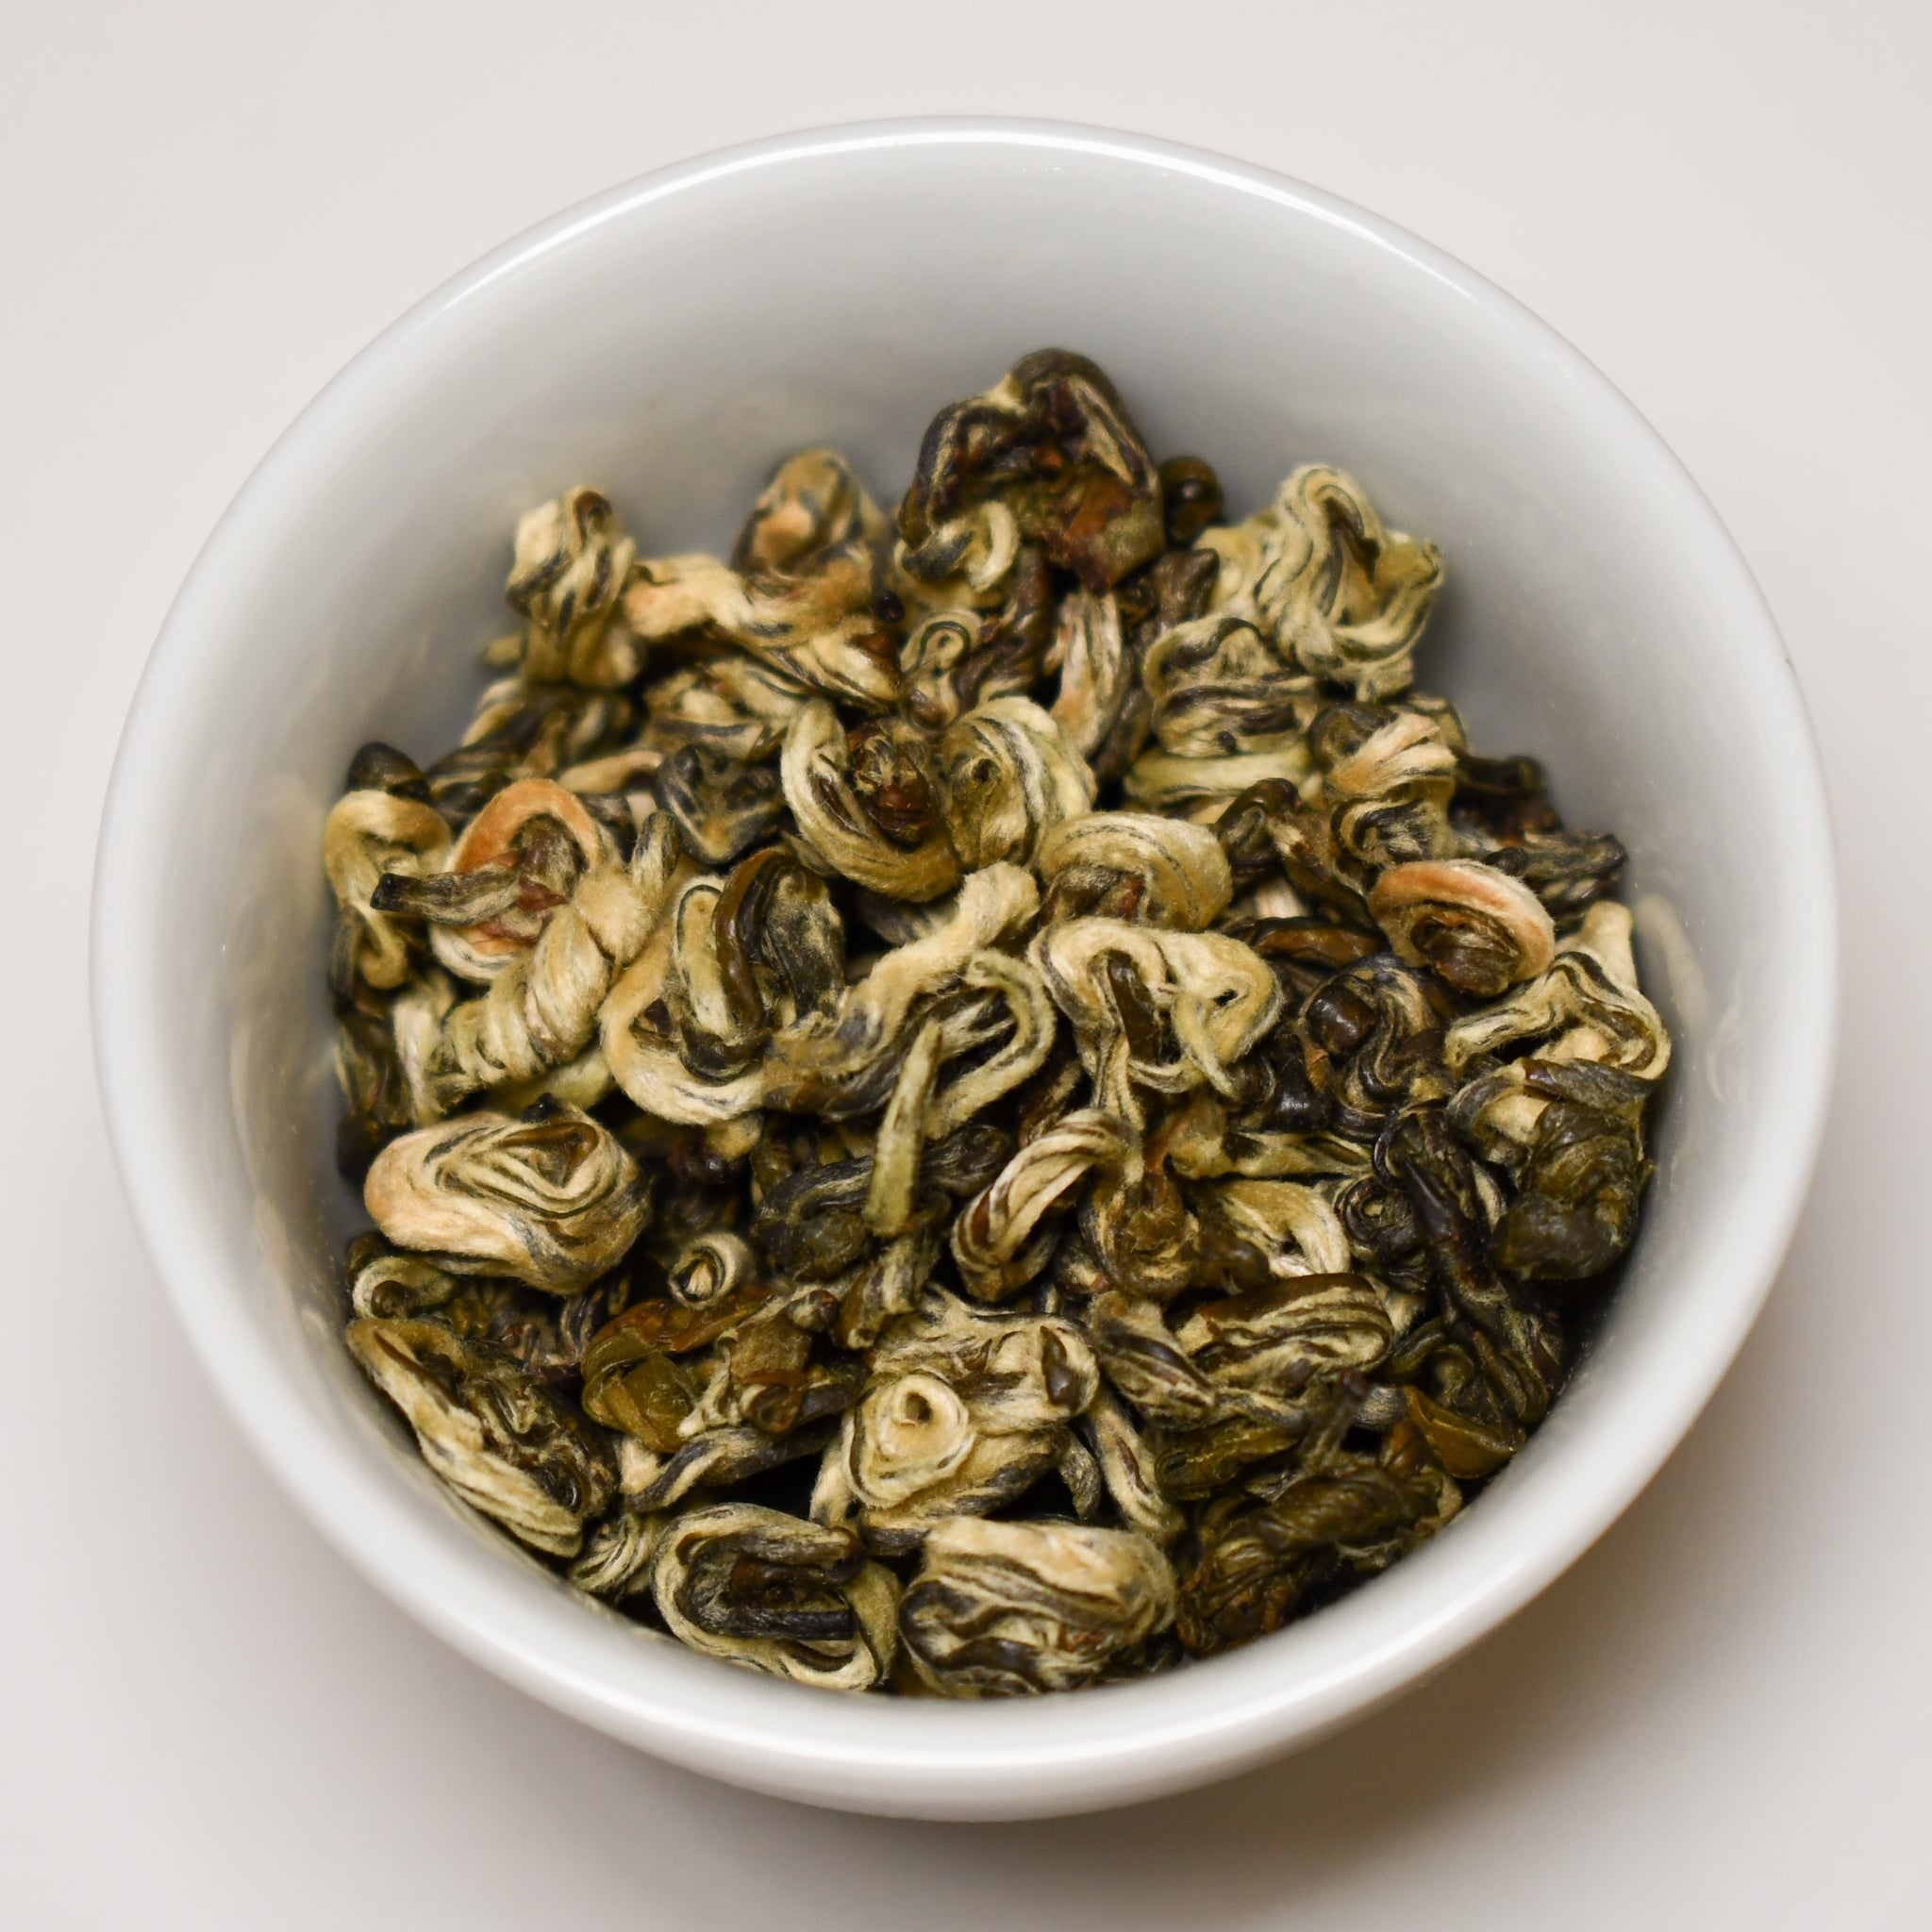 China "Bi Luo Chun" Green Tea